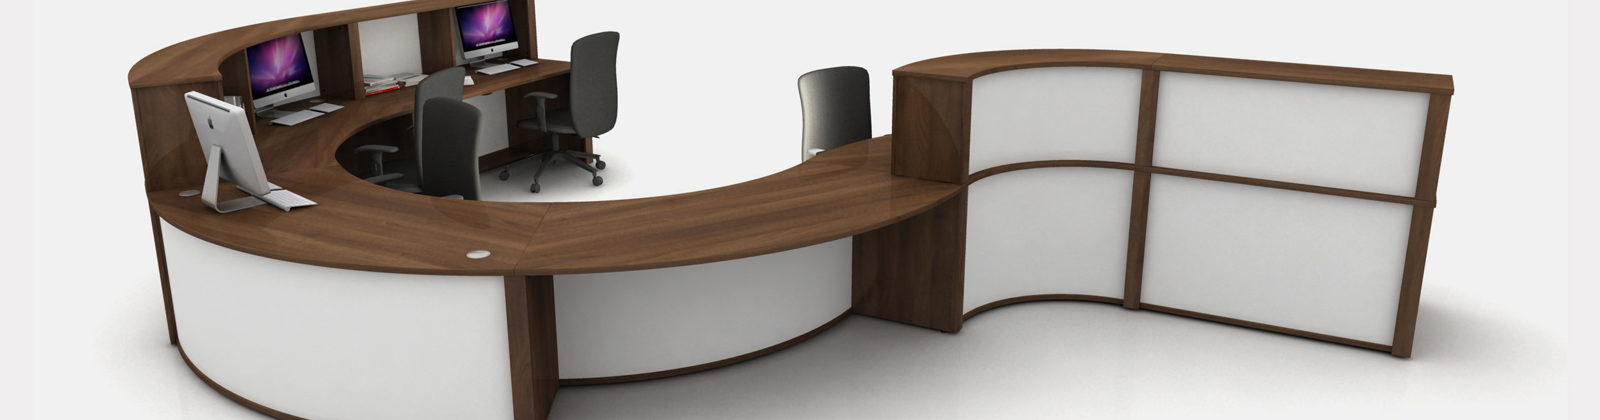 Mobili Reception Desks